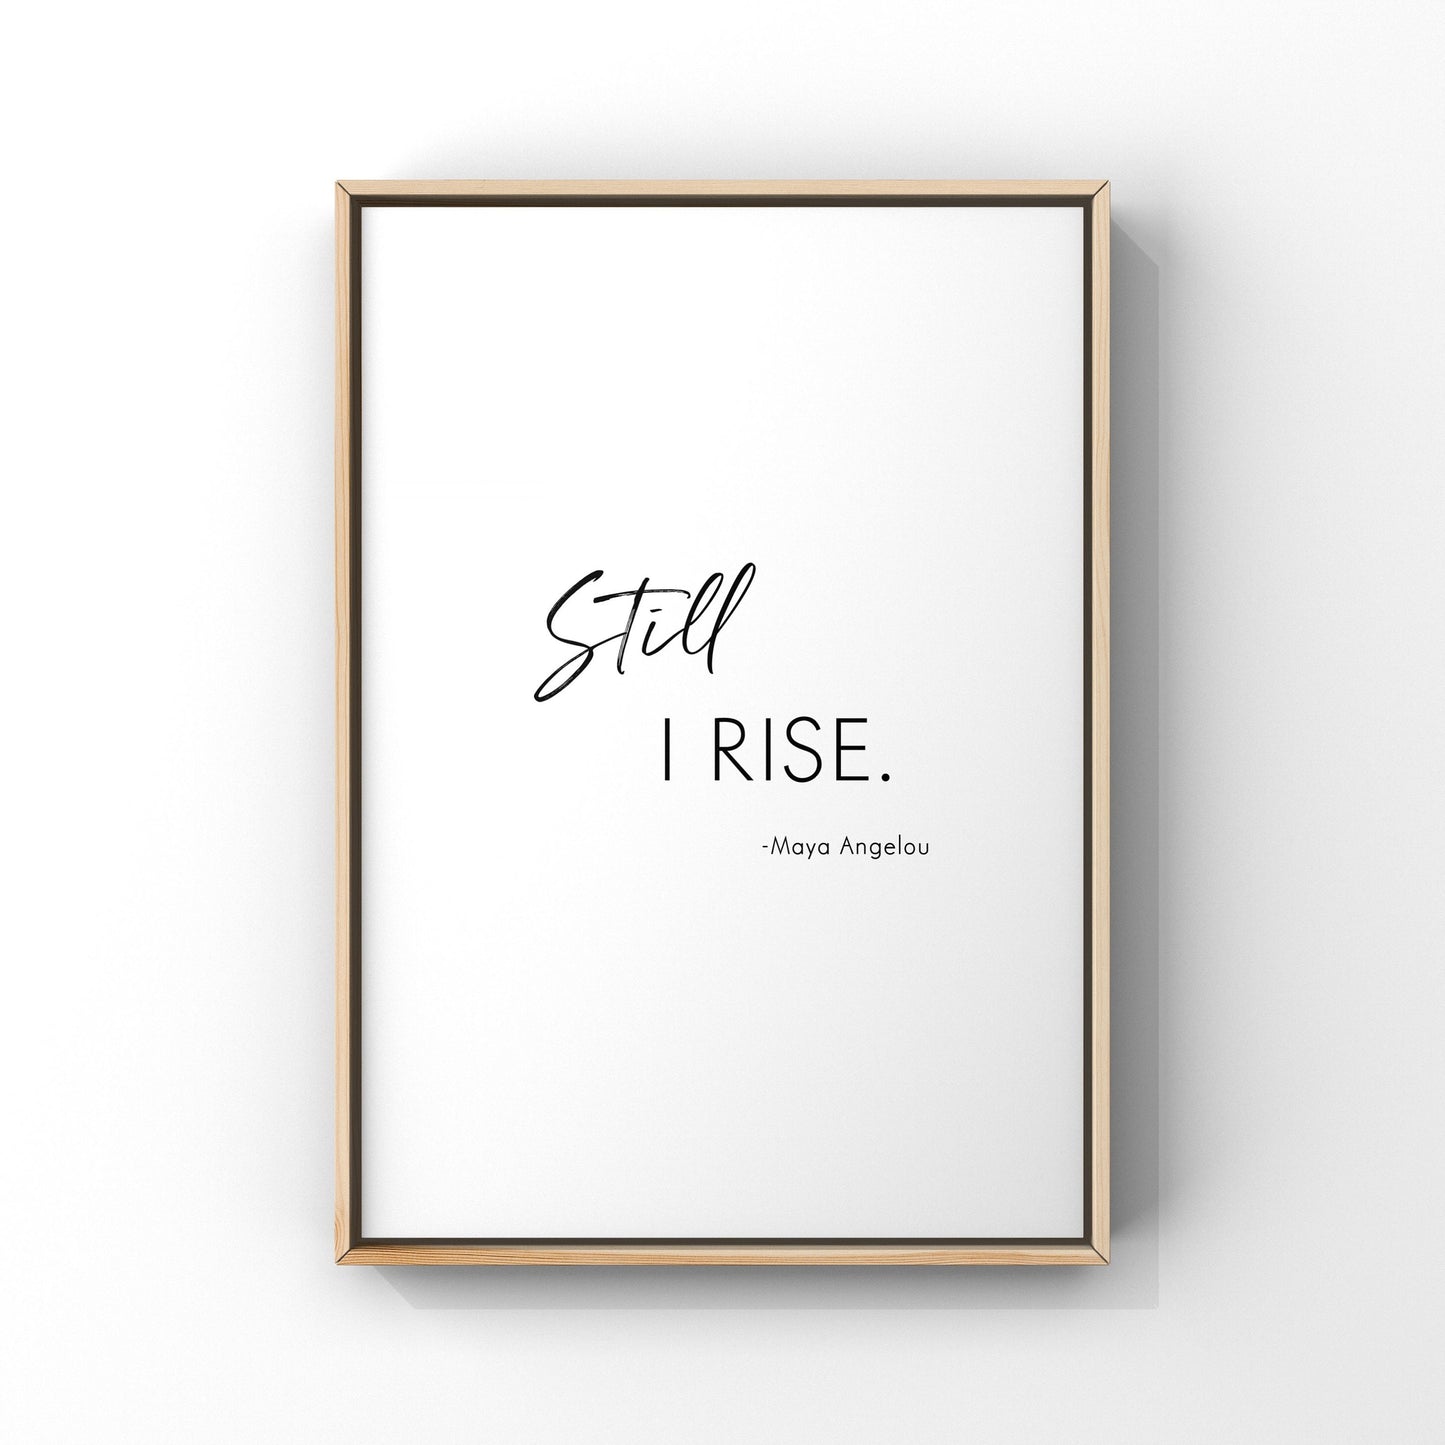 Still I rise, Maya Angelou quotes,Maya Angelou Wall Art Sign,Inspirational print,Wall decor,Still I rise poster,Feminism,Inspirational quote